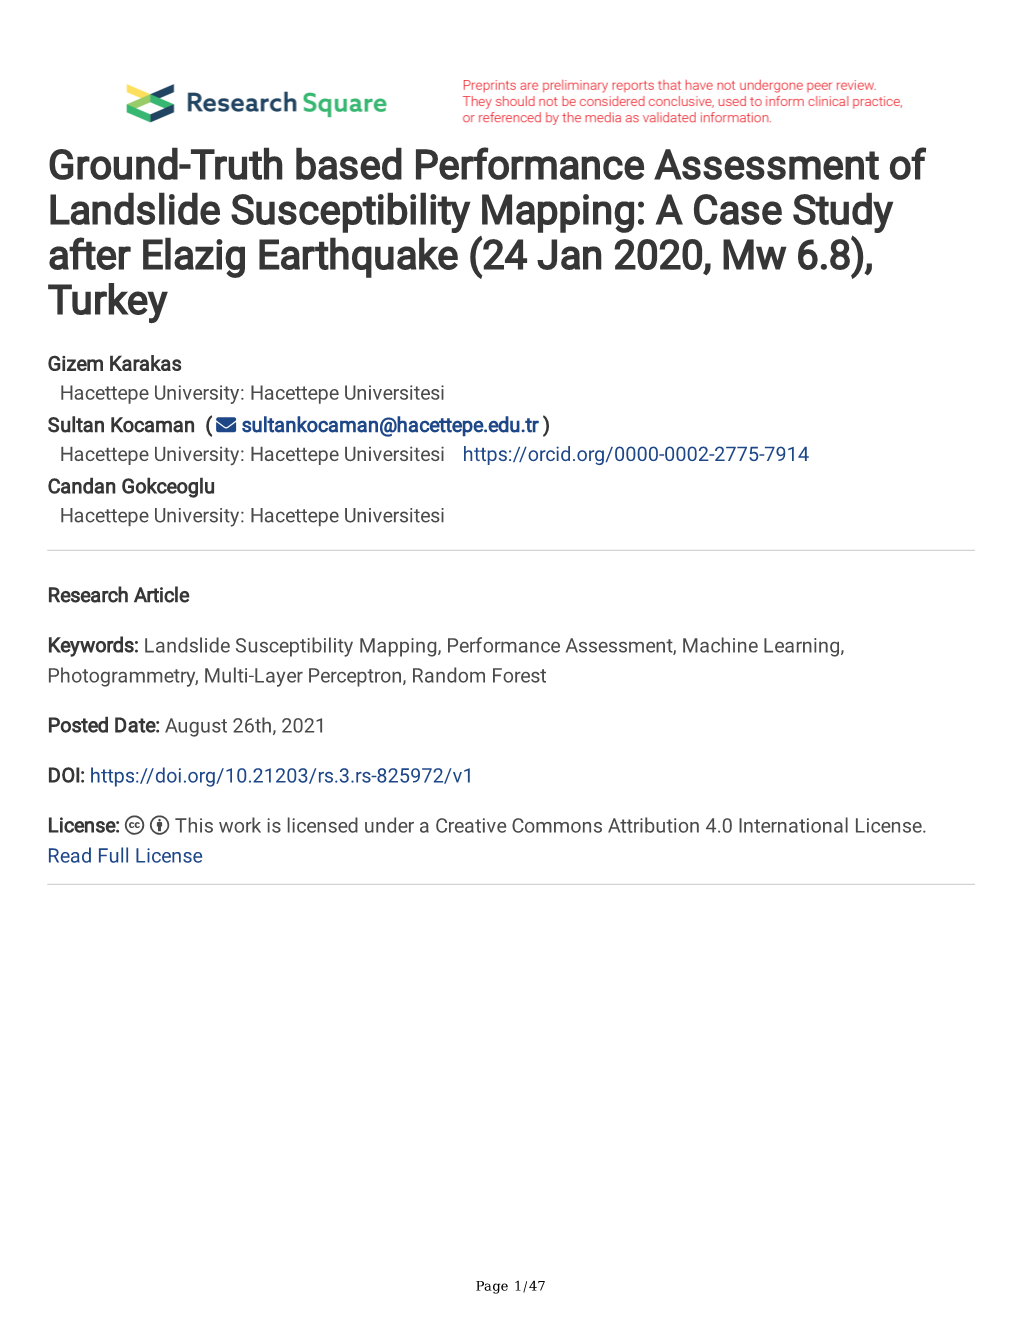 A Case Study After Elazig Earthquake (24 Jan 2020, Mw 6.8), Turkey